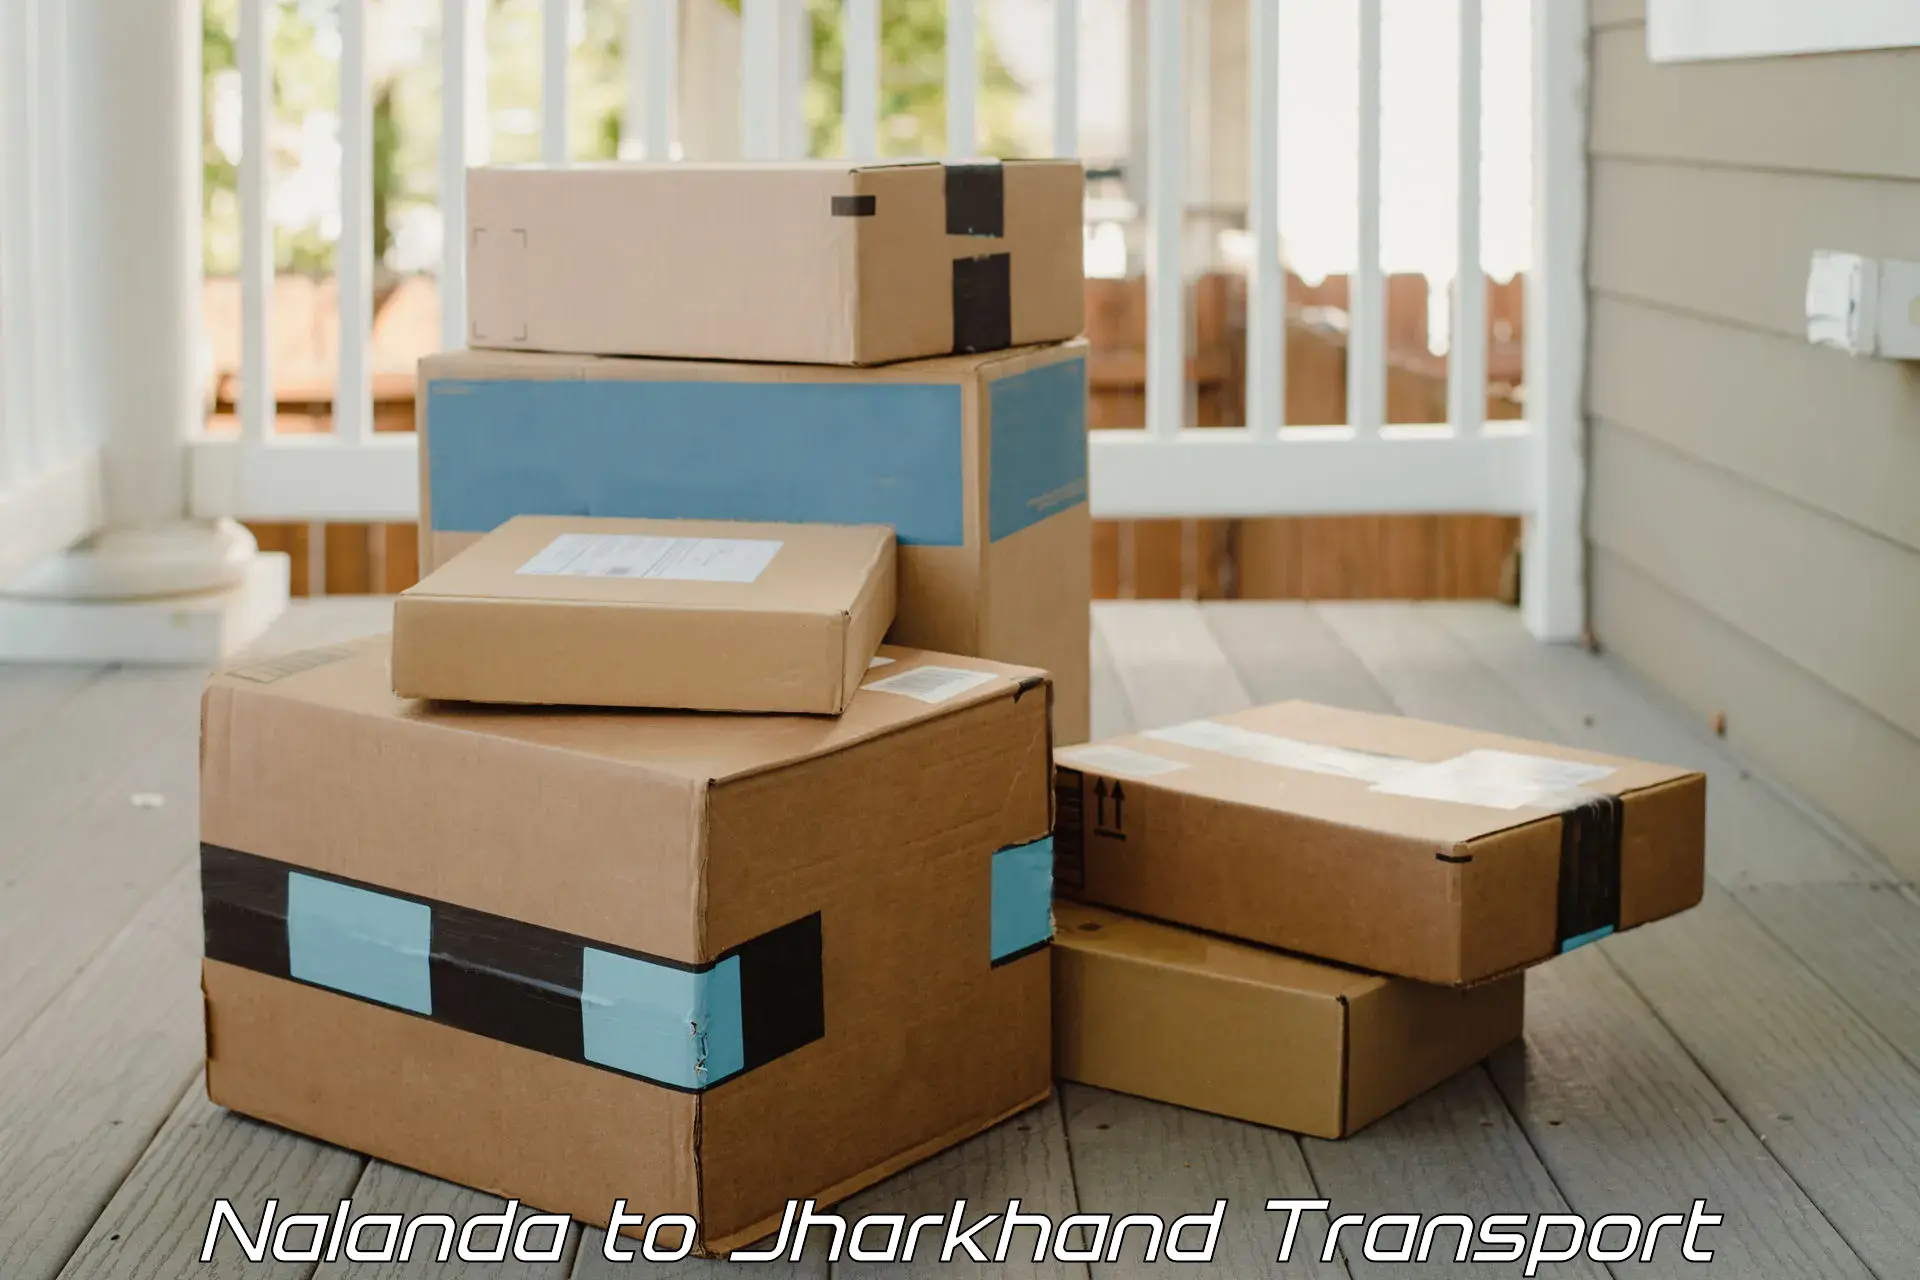 Container transportation services Nalanda to Medininagar